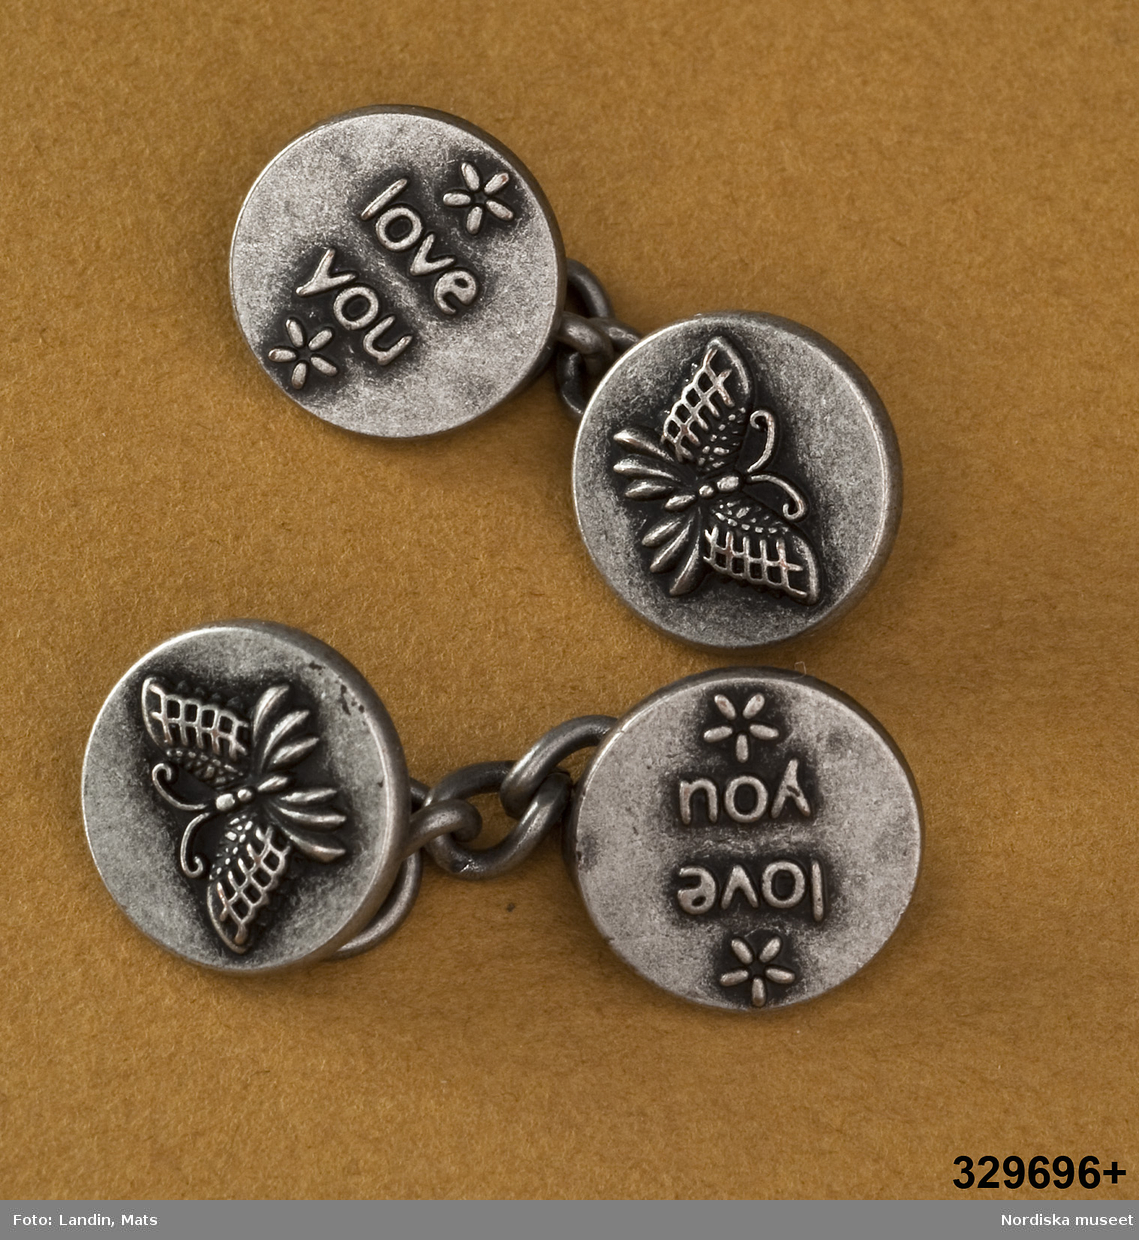 Ett par (2 st) länkknappar av vitmetall. bestående av två runda knappar med kedja emellan. På ena knappen en reliefbild i form av fjäril, på den andra text "love you". 
/Leif Wallin 2009-11-18